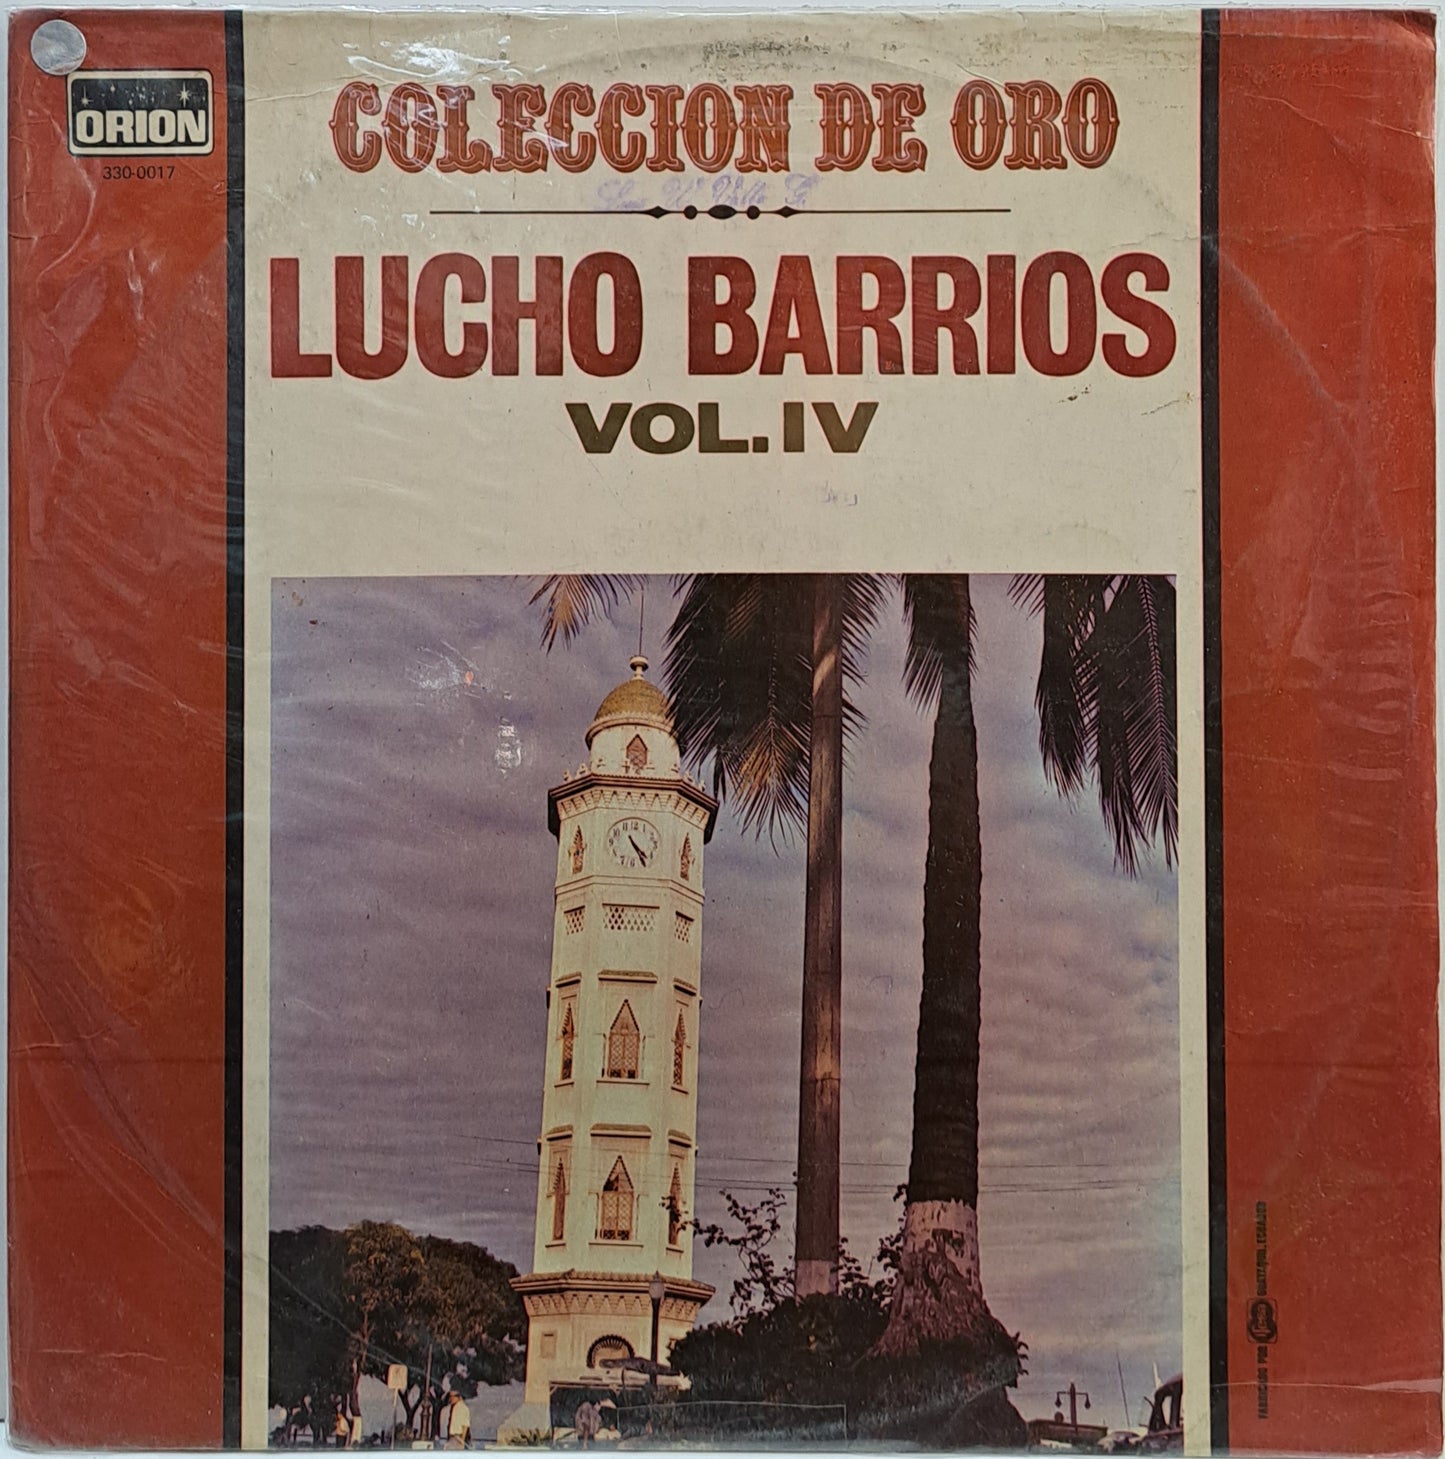 LUCHO BARRIOS - COLECCION DE ORO VOL IV LP